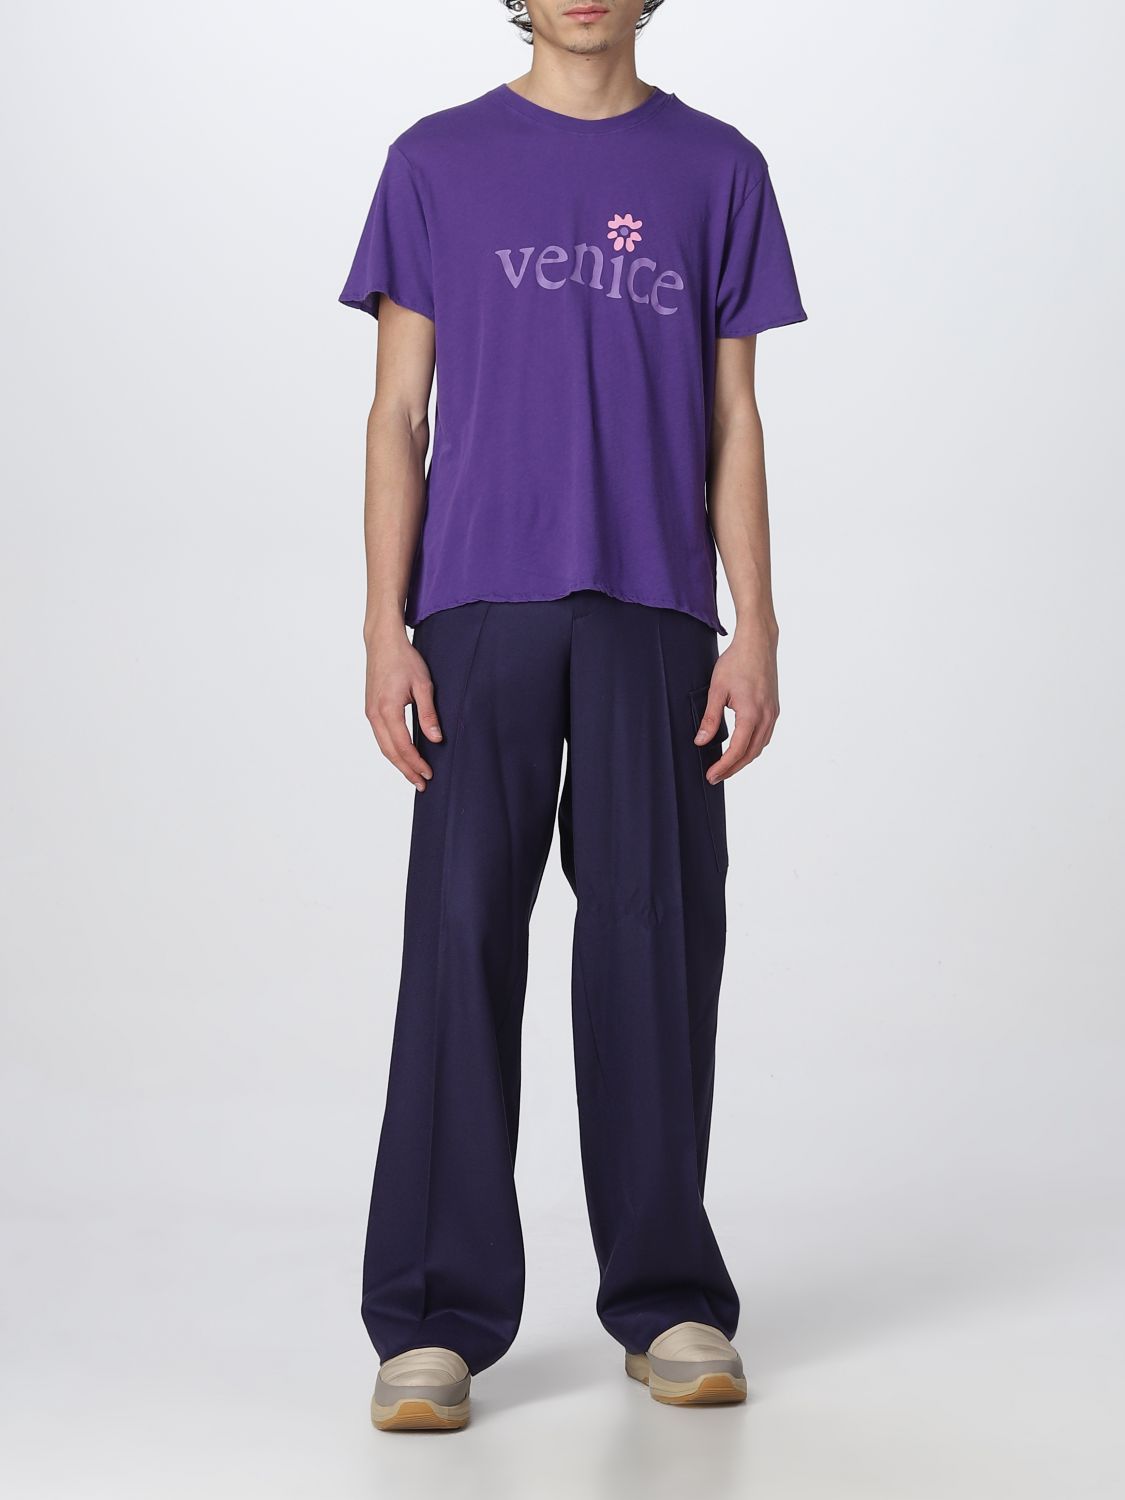 T恤 Erl: Erlt恤男士 紫色 2